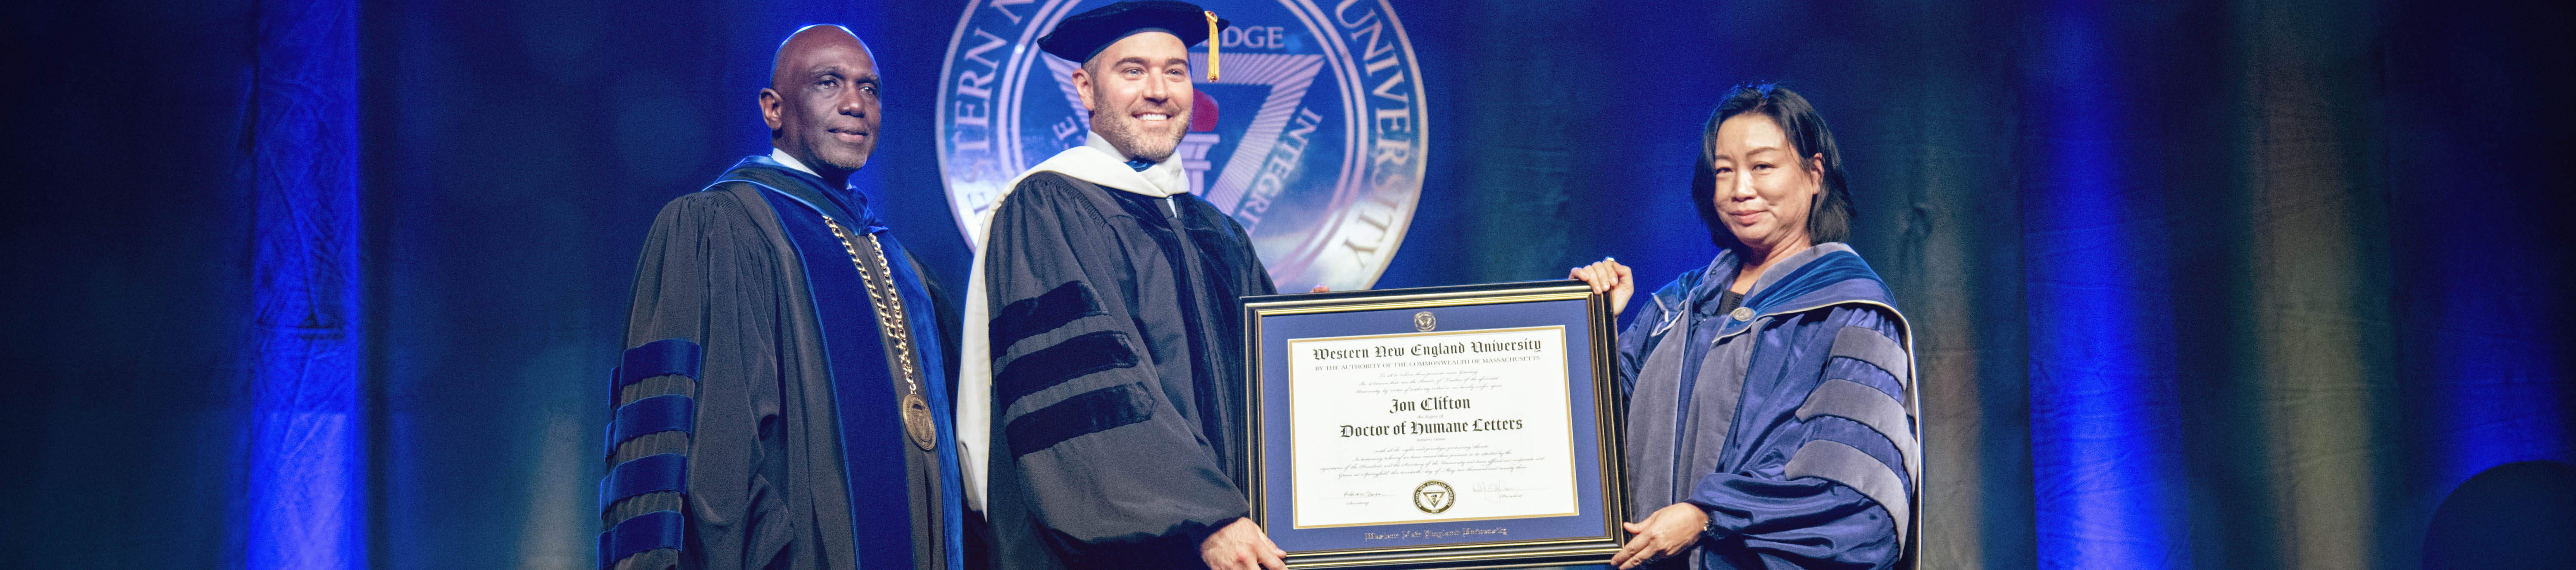 Jon Clifton receives honorary degree